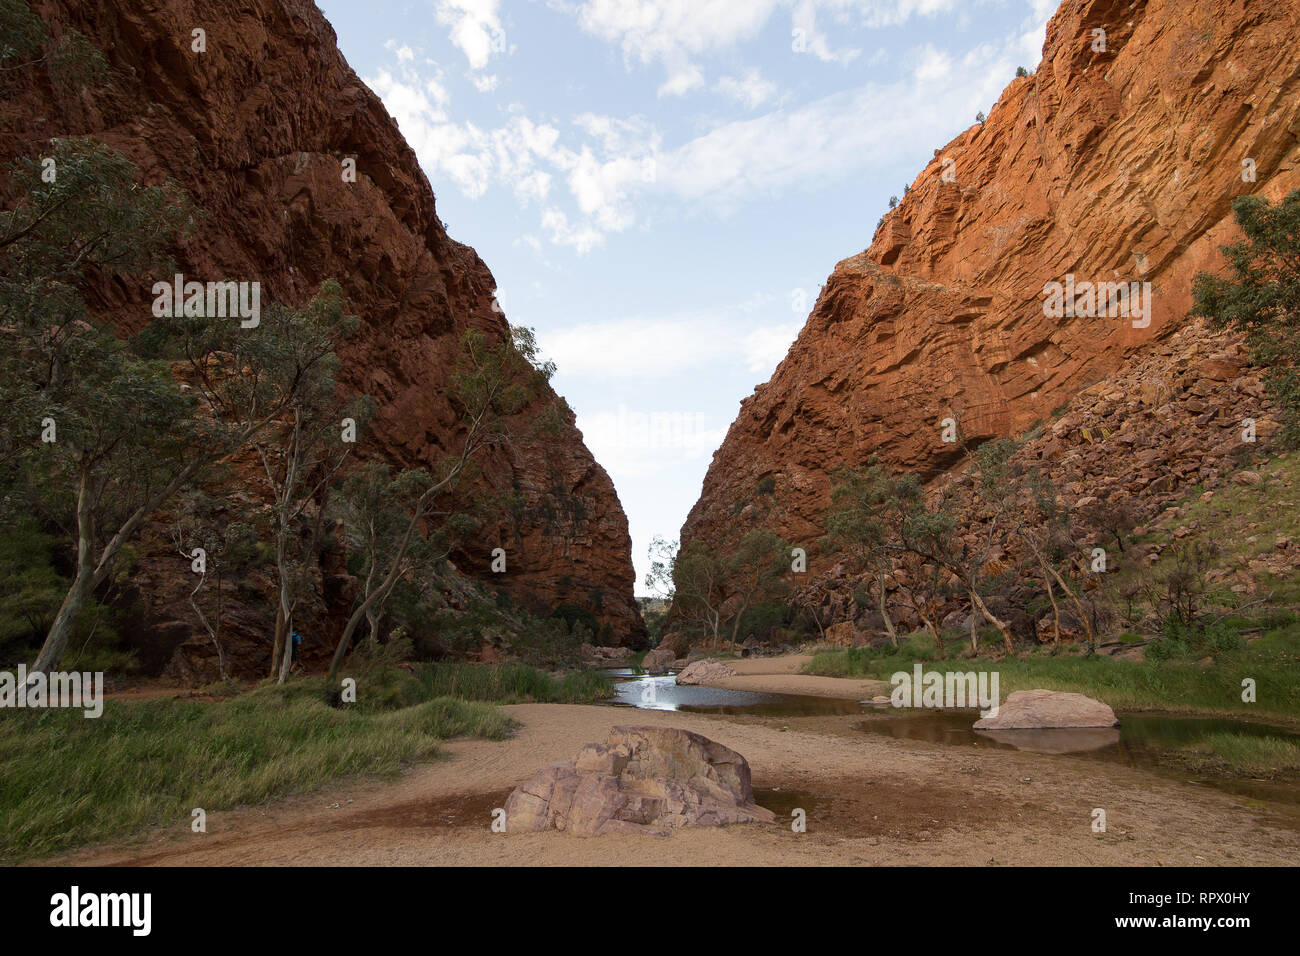 Simpsons Gap (aborigènes Arrernte : Rungutjirpa) est l'une des lacunes dans les West MacDonnell Ranges en Australie dans le Territoire du Nord. à l'ouest de Alice Springs. Banque D'Images